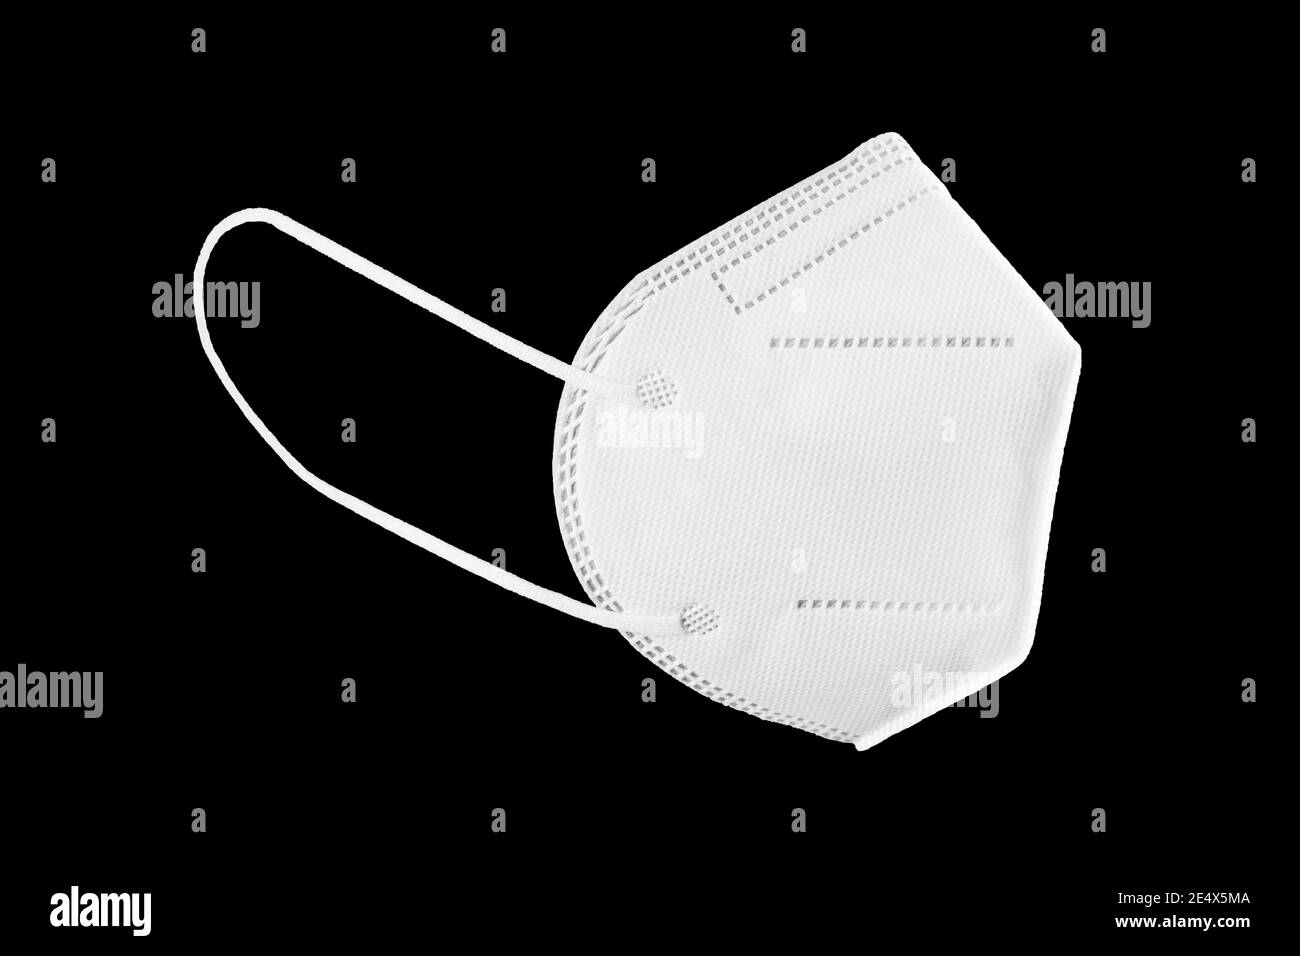 Gesichtsmaske KN95, FFP2, FFP3 auf schwarzem Hintergrund isoliert. Persönliche Schutzausrüstung gegen Coronavirus Covid-19 Stockfoto